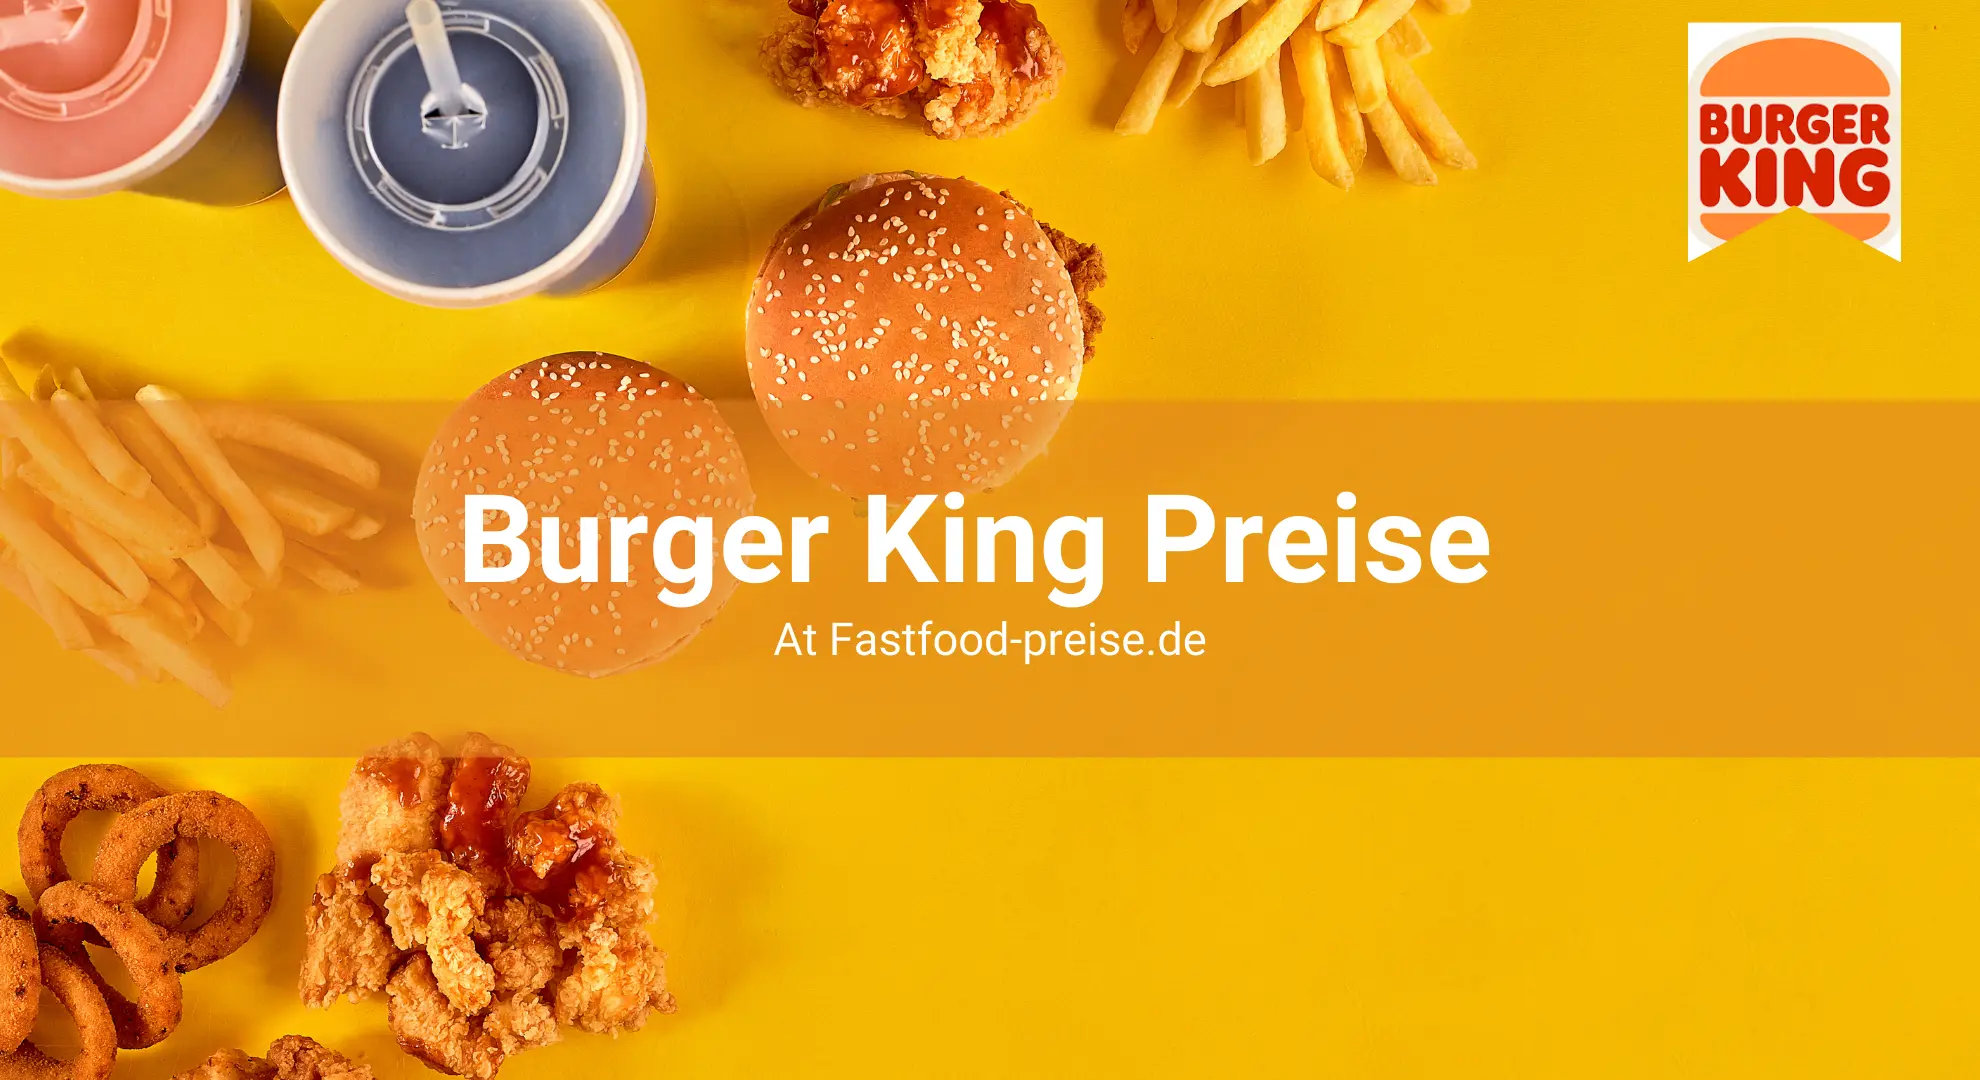 Burger king preise image